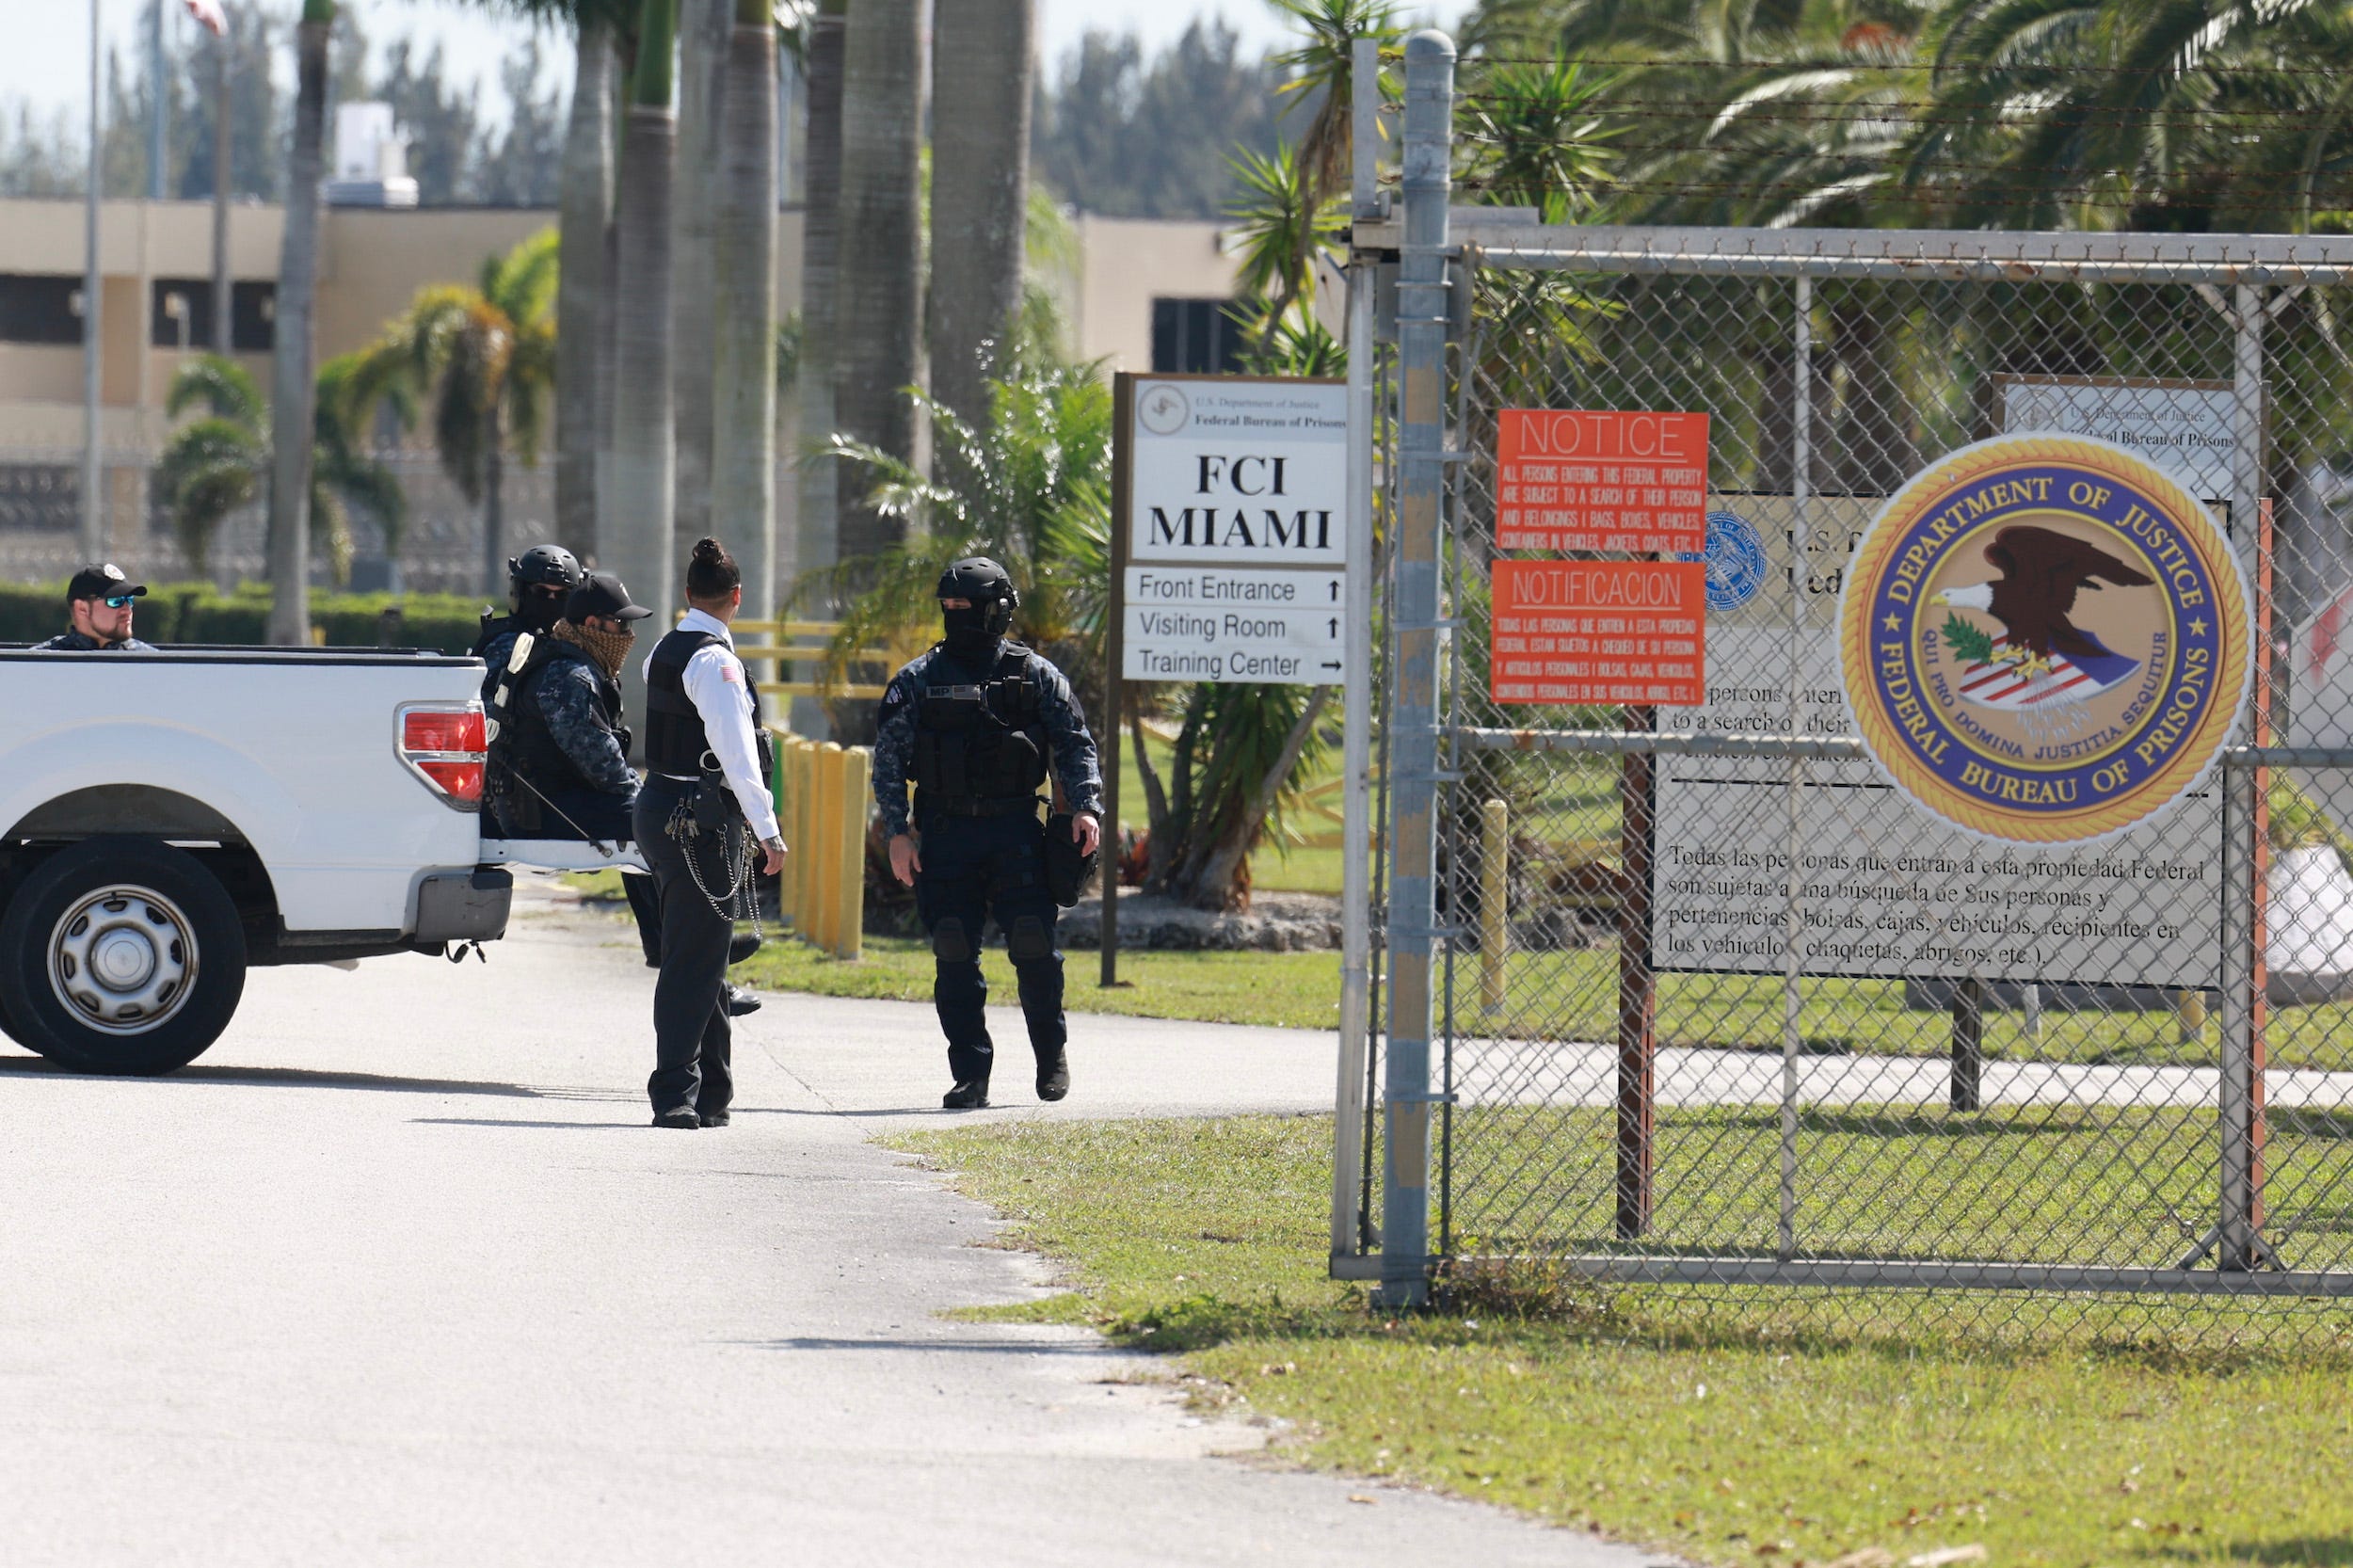 Sicherheitspersonal steht in der Nähe eines Drahtzauns Wache.  Auf einem weißen Schild steht FCI Miami